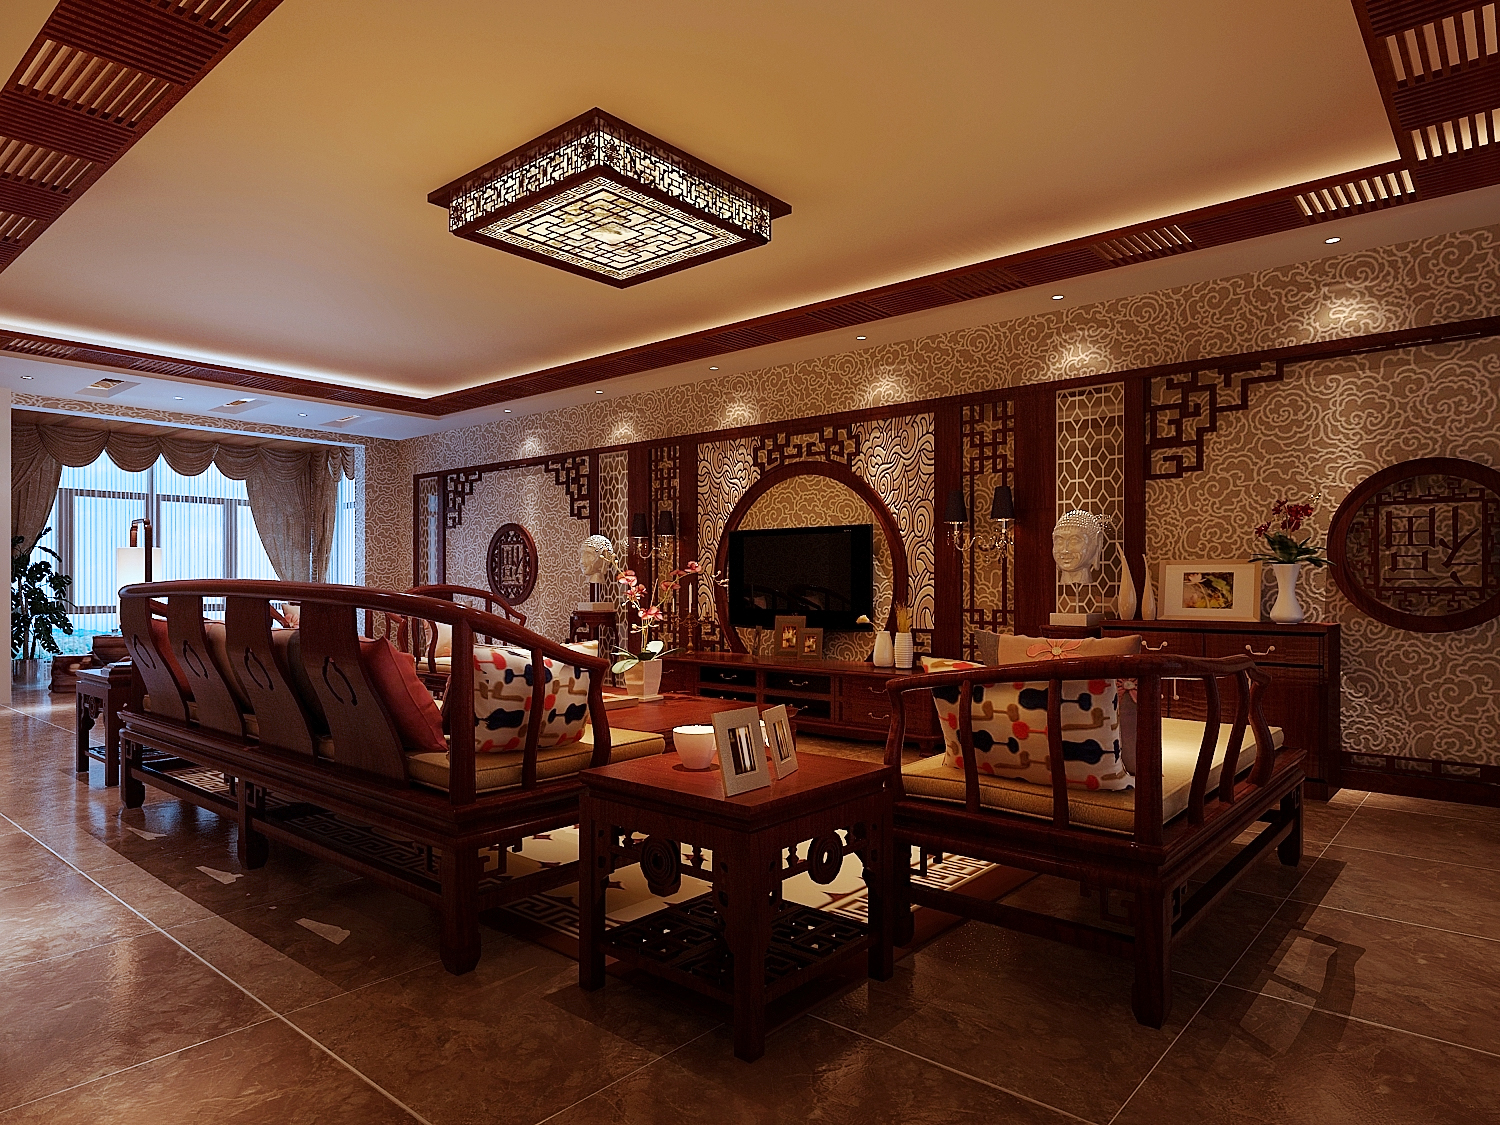 中式 三居 客厅 客厅图片来自成都幸福魔方装饰工程有限公司在彰显华夏千年文化辉煌的分享